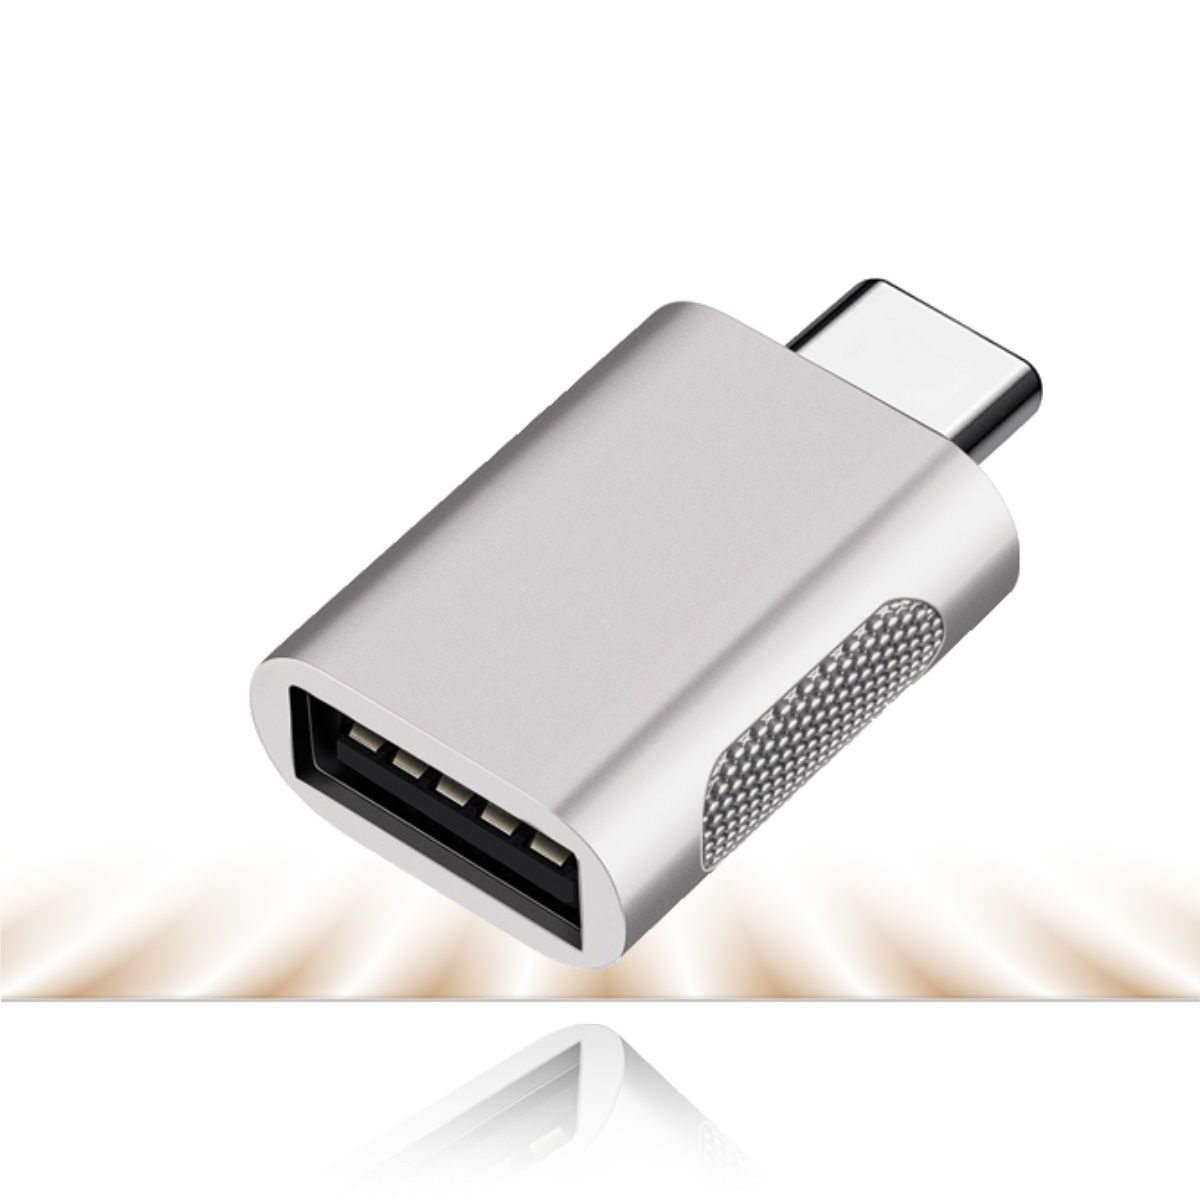 C USB zu Adapter, Adapter CRADYS USB Silber silber